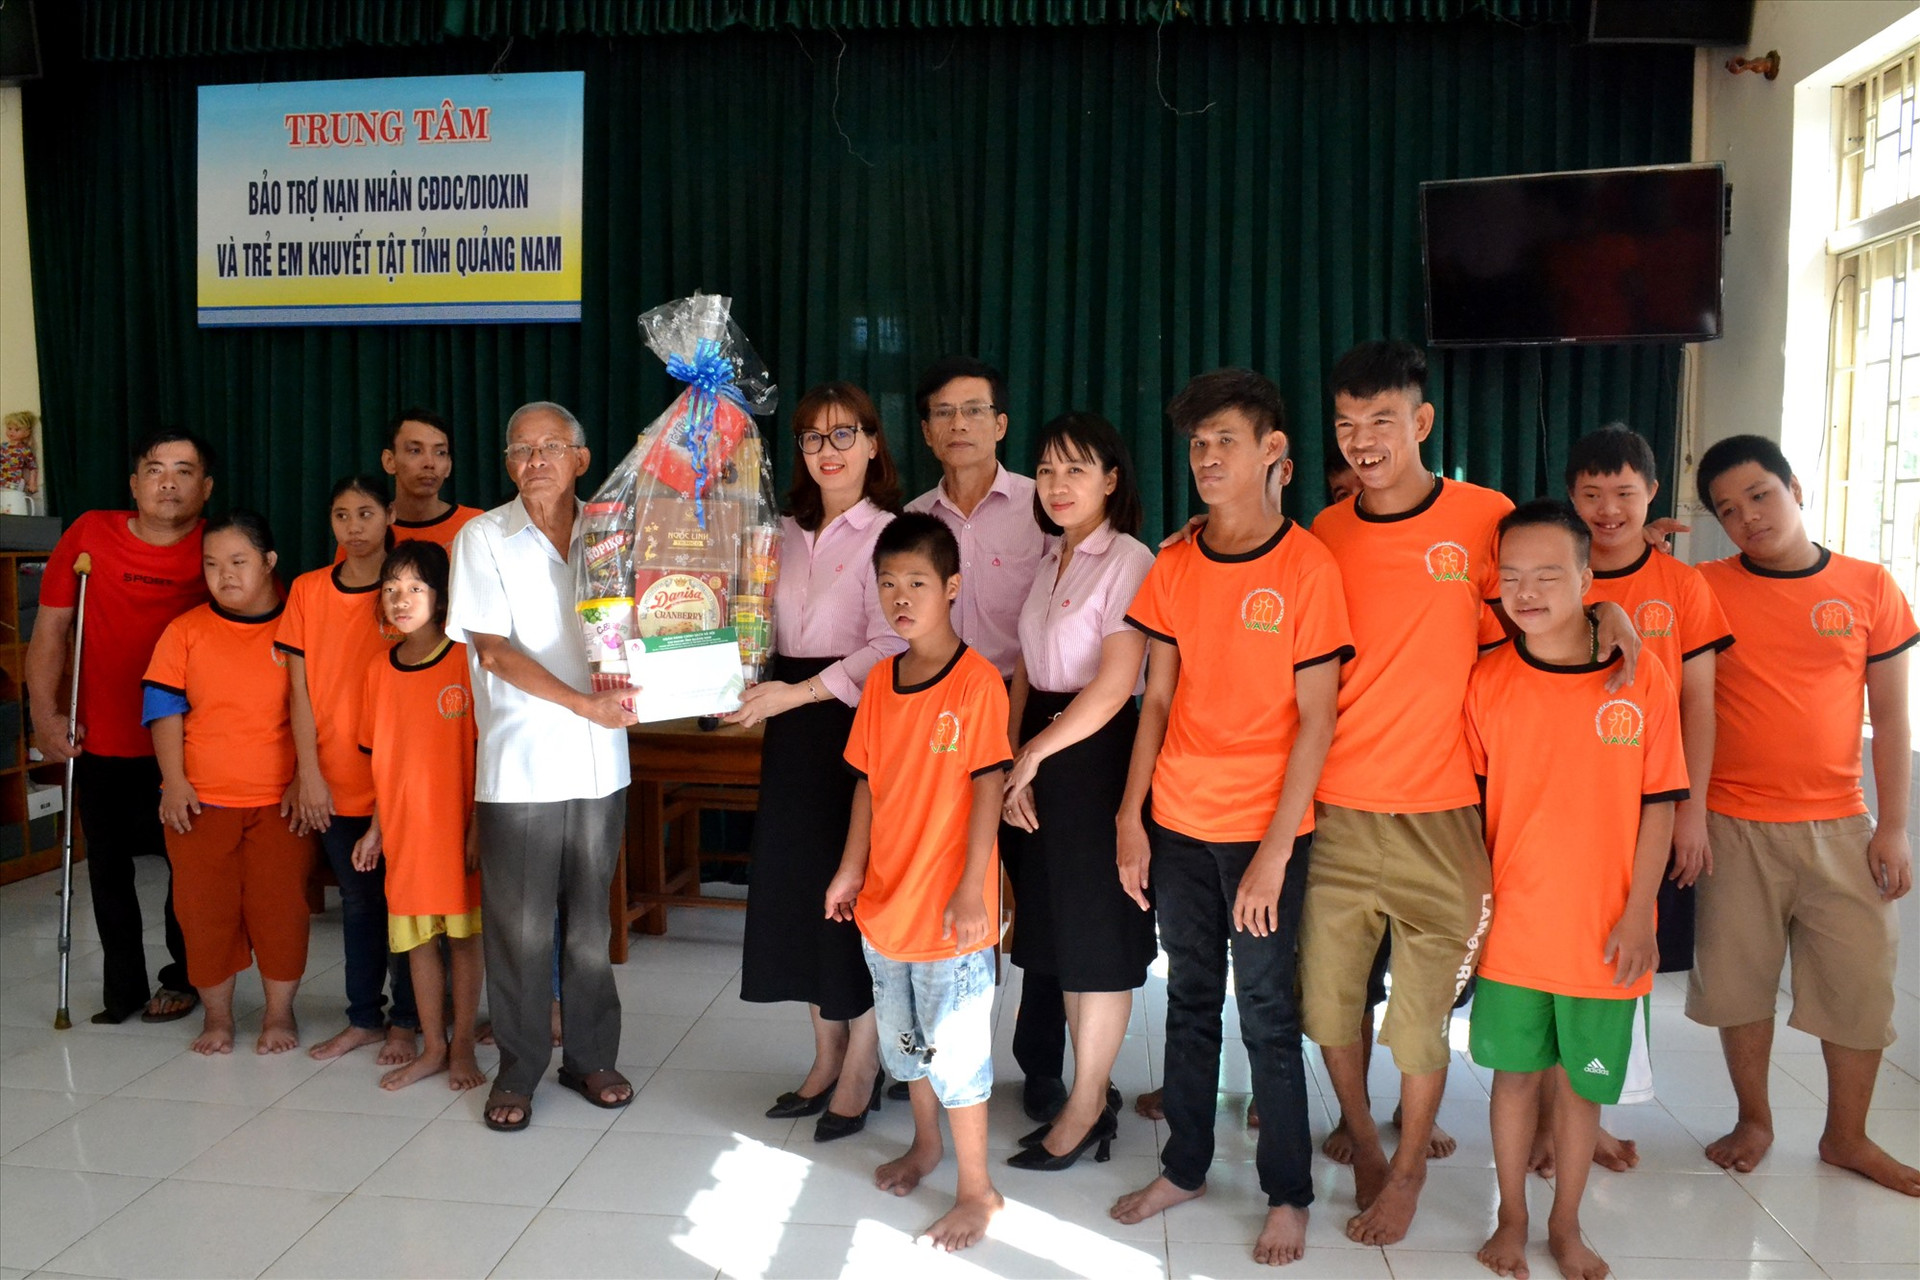 Đoàn đã đến thăm hỏi, tặng quà tại Trung tâm Bảo trợ nạn nhân chất độc da cam/dioxin Quảng Nam và trẻ em khuyết tật tỉnh. Ảnh: Q.VIỆT